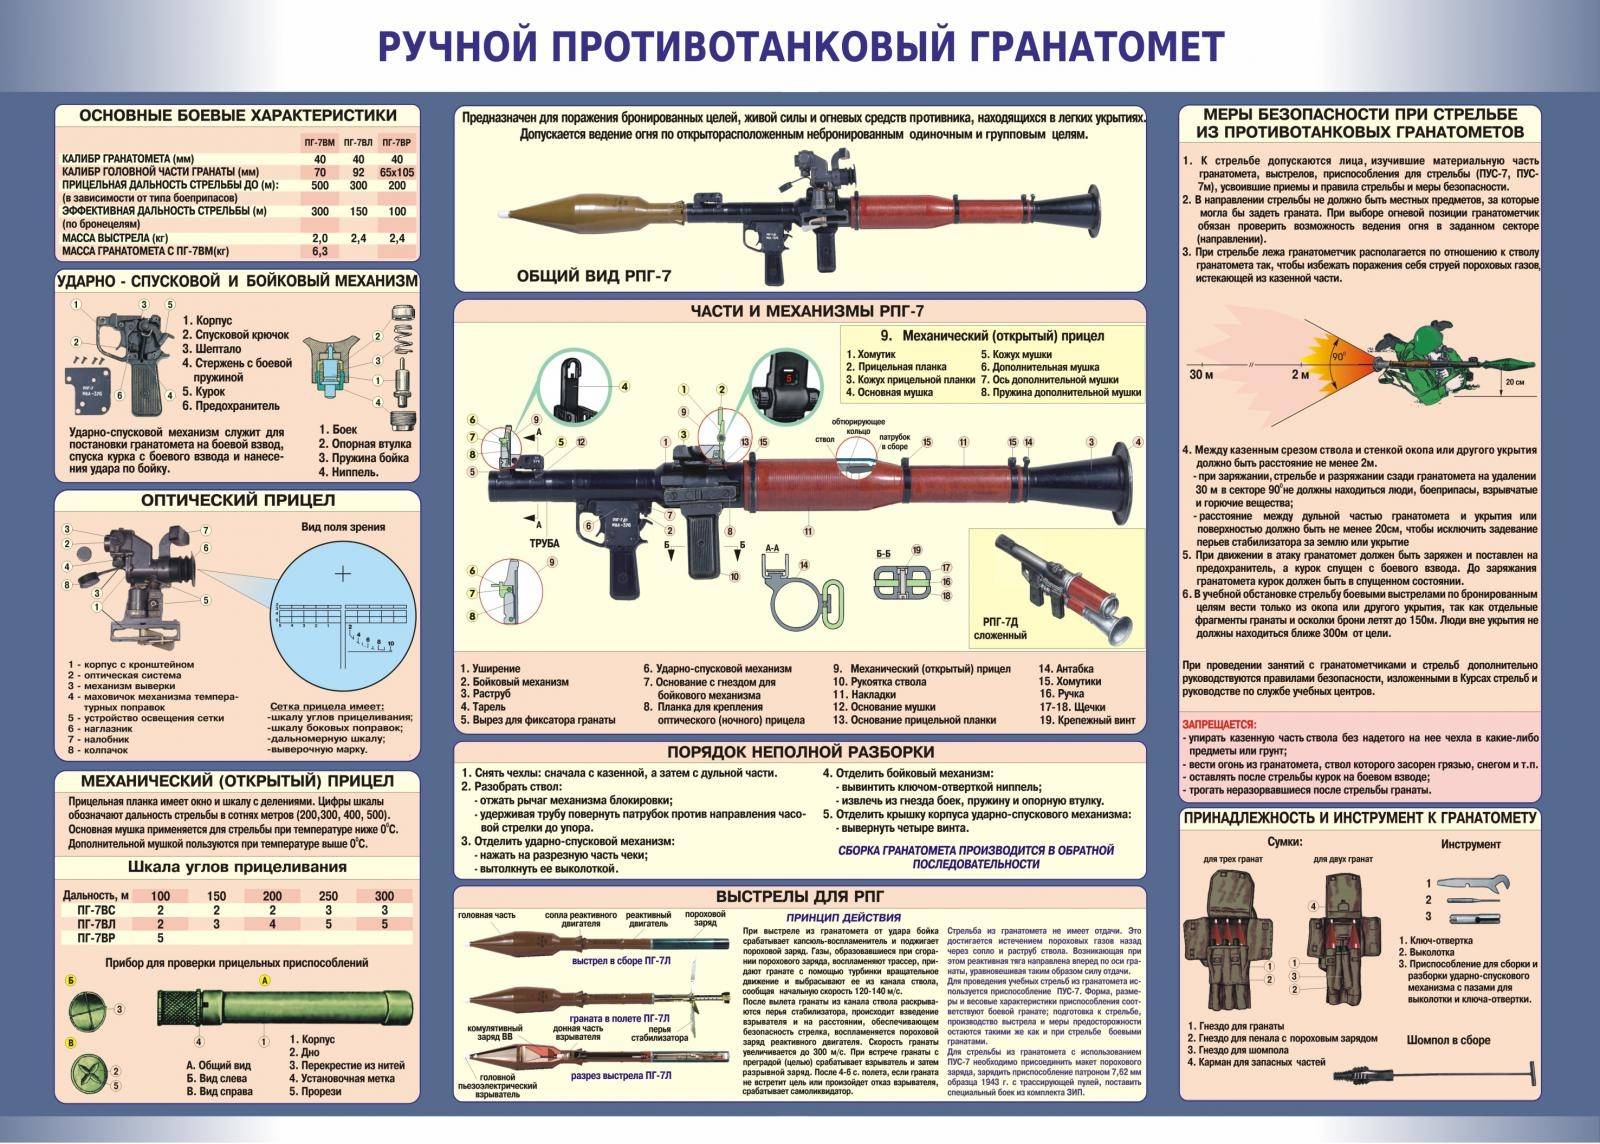 Рпг, он же русская базука: история самого распространённого гранатомета в мире